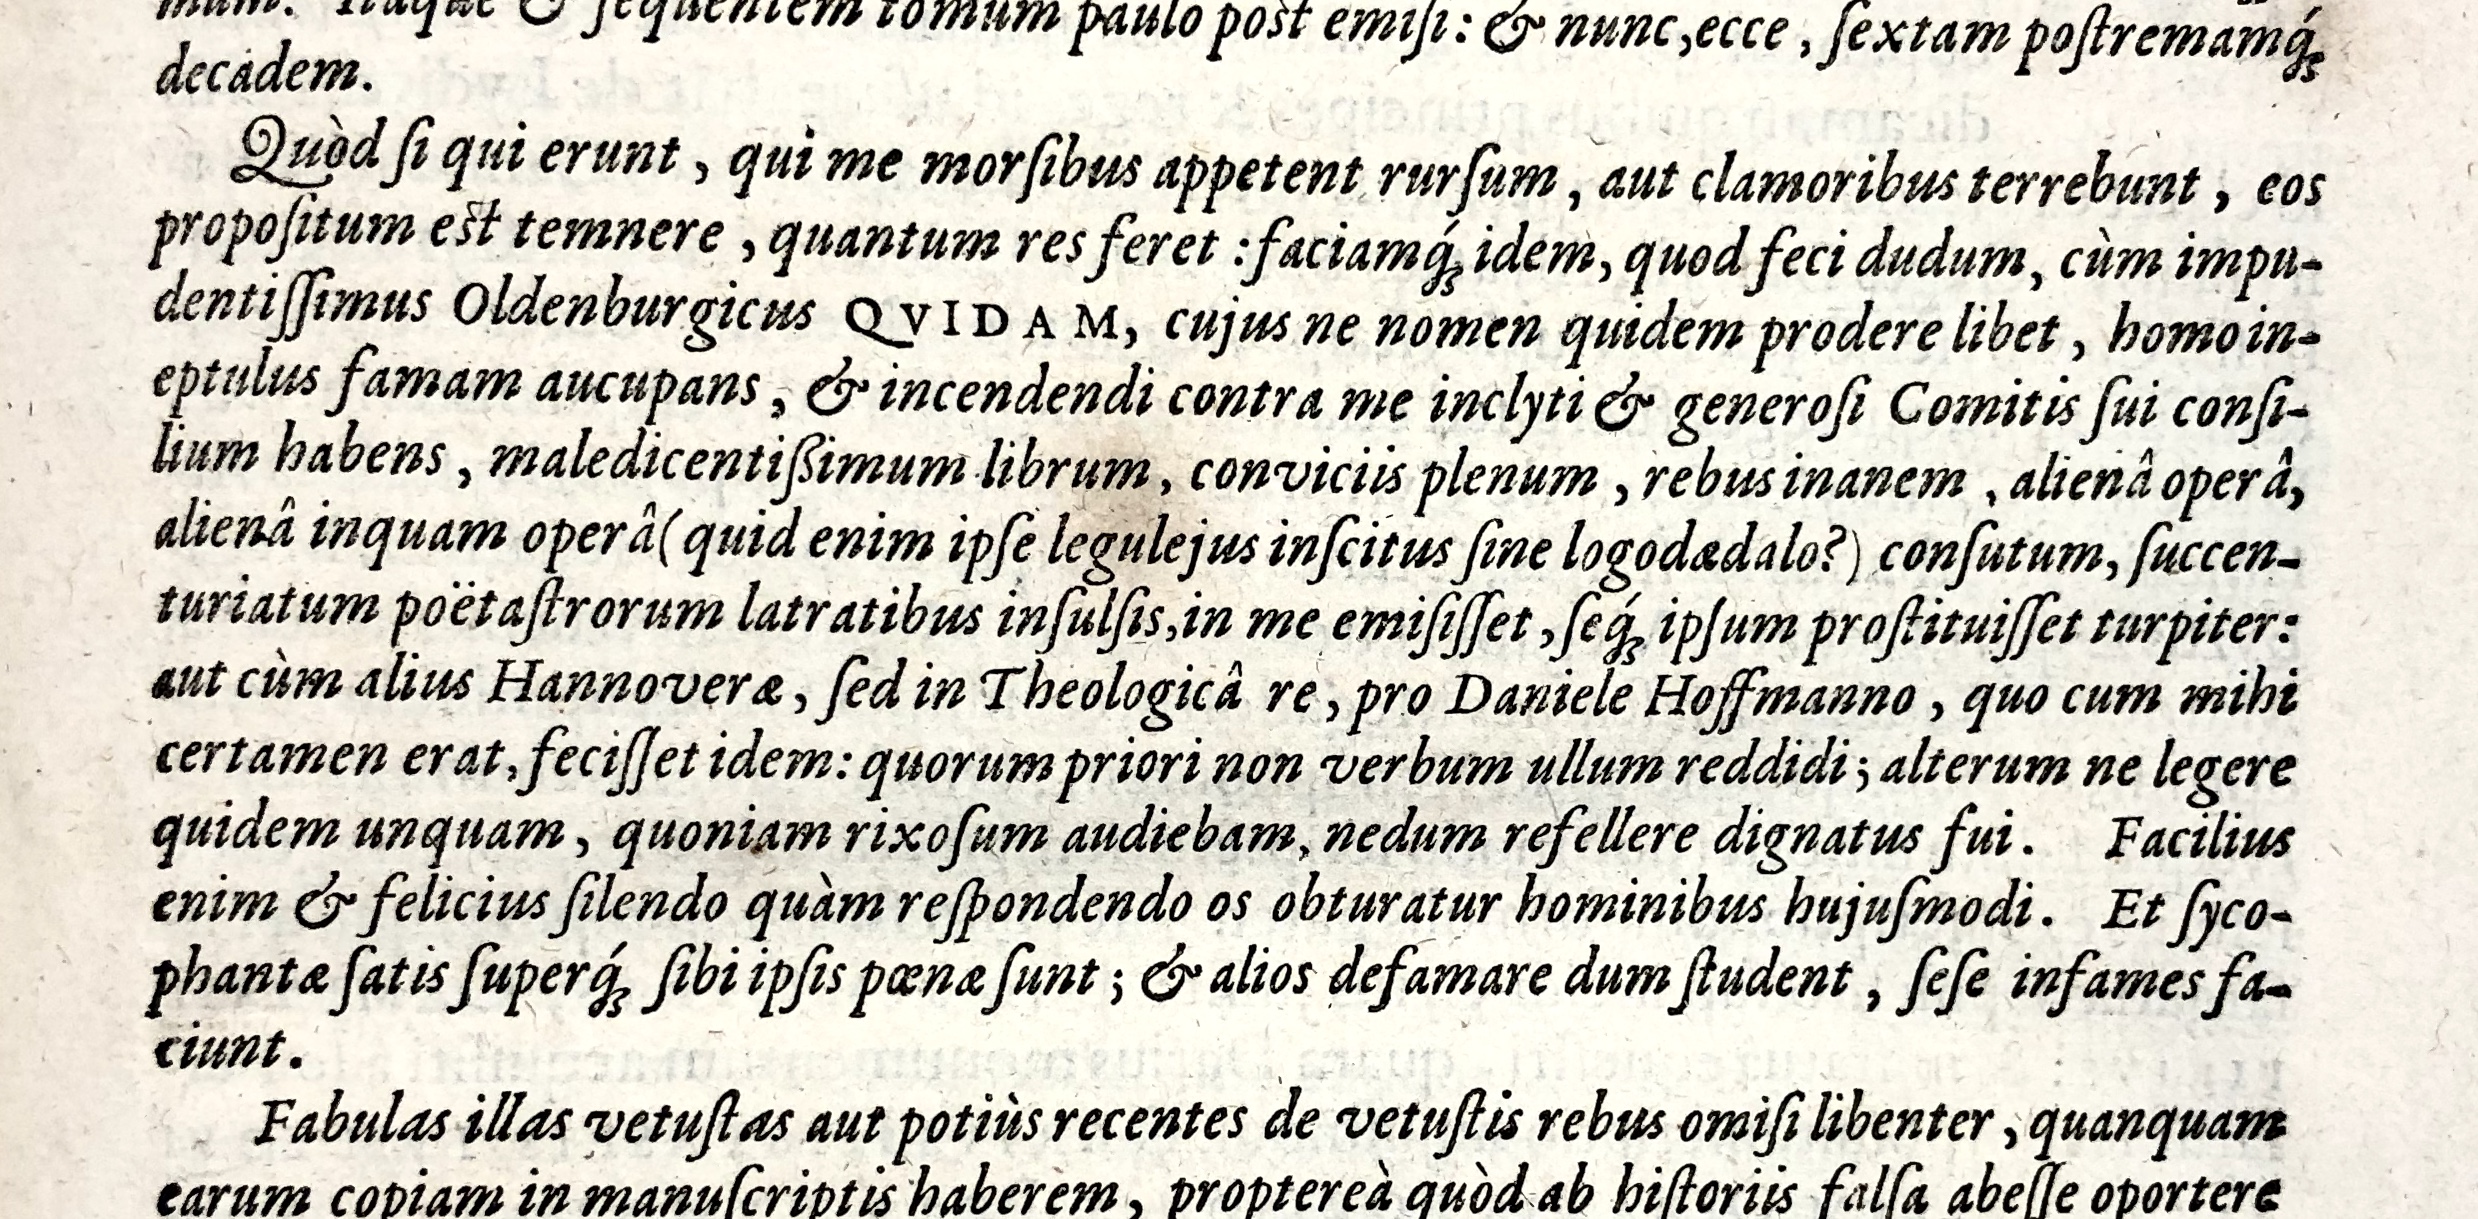 19. Ubbo Emmius, Rerum Frisicarum historia (Leiden 1616), fol. 2)(3r20. Ubbo Emmius, Rerum Frisicarum historia (Leiden 1616), fol. 2)(3r20. Ubbo Emmius, Rerum Frisicarum historia (Leiden 1616), fol. 2)(3r